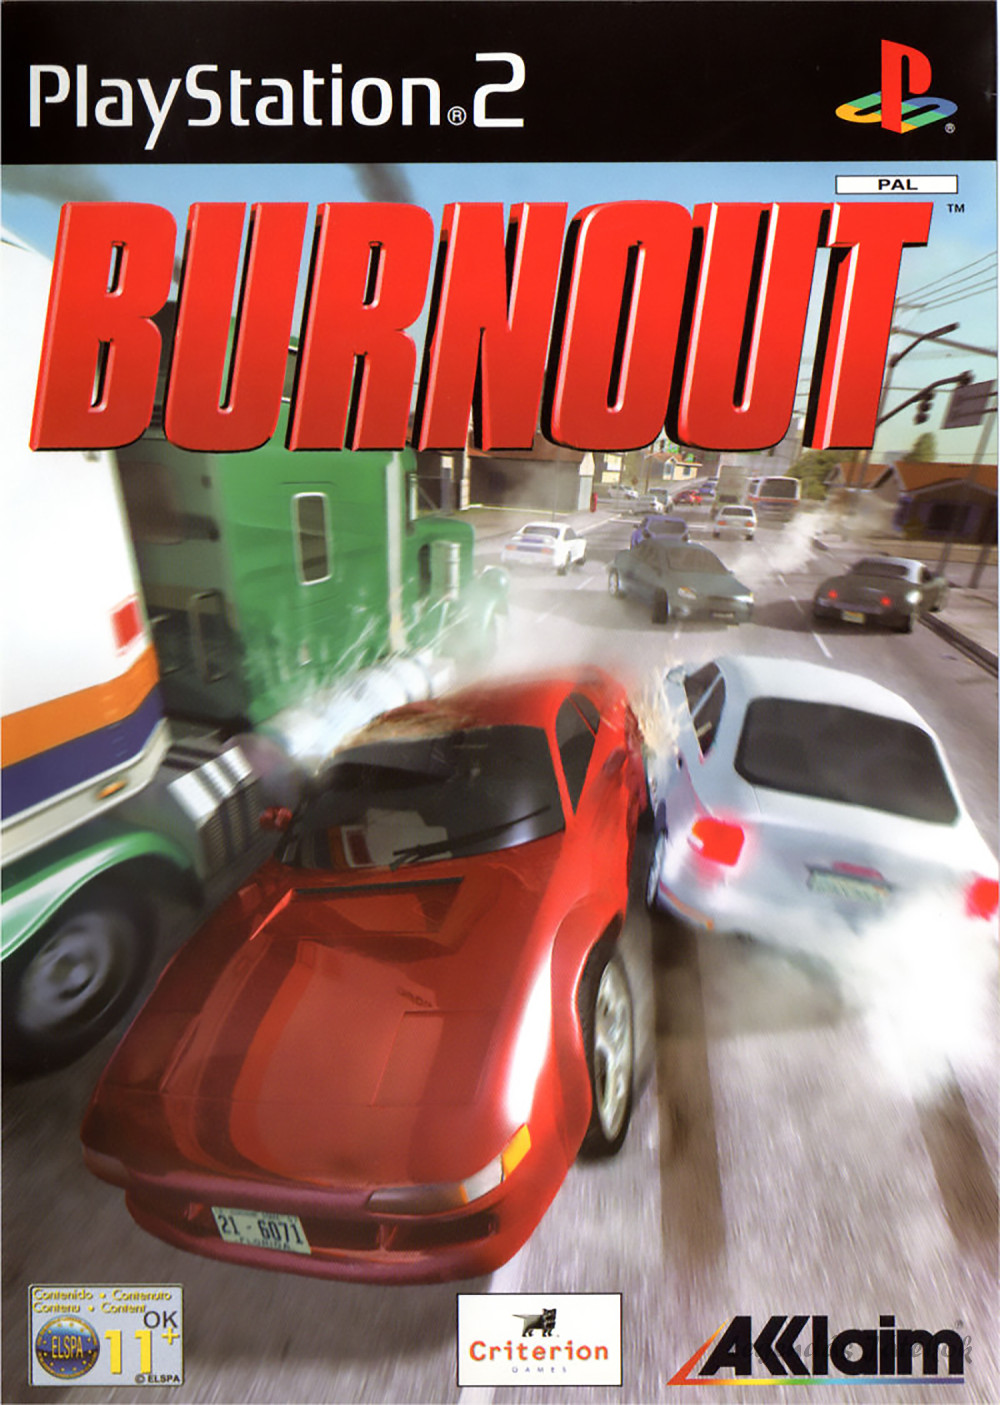 Burnout Ps2 játék PAL (használt)